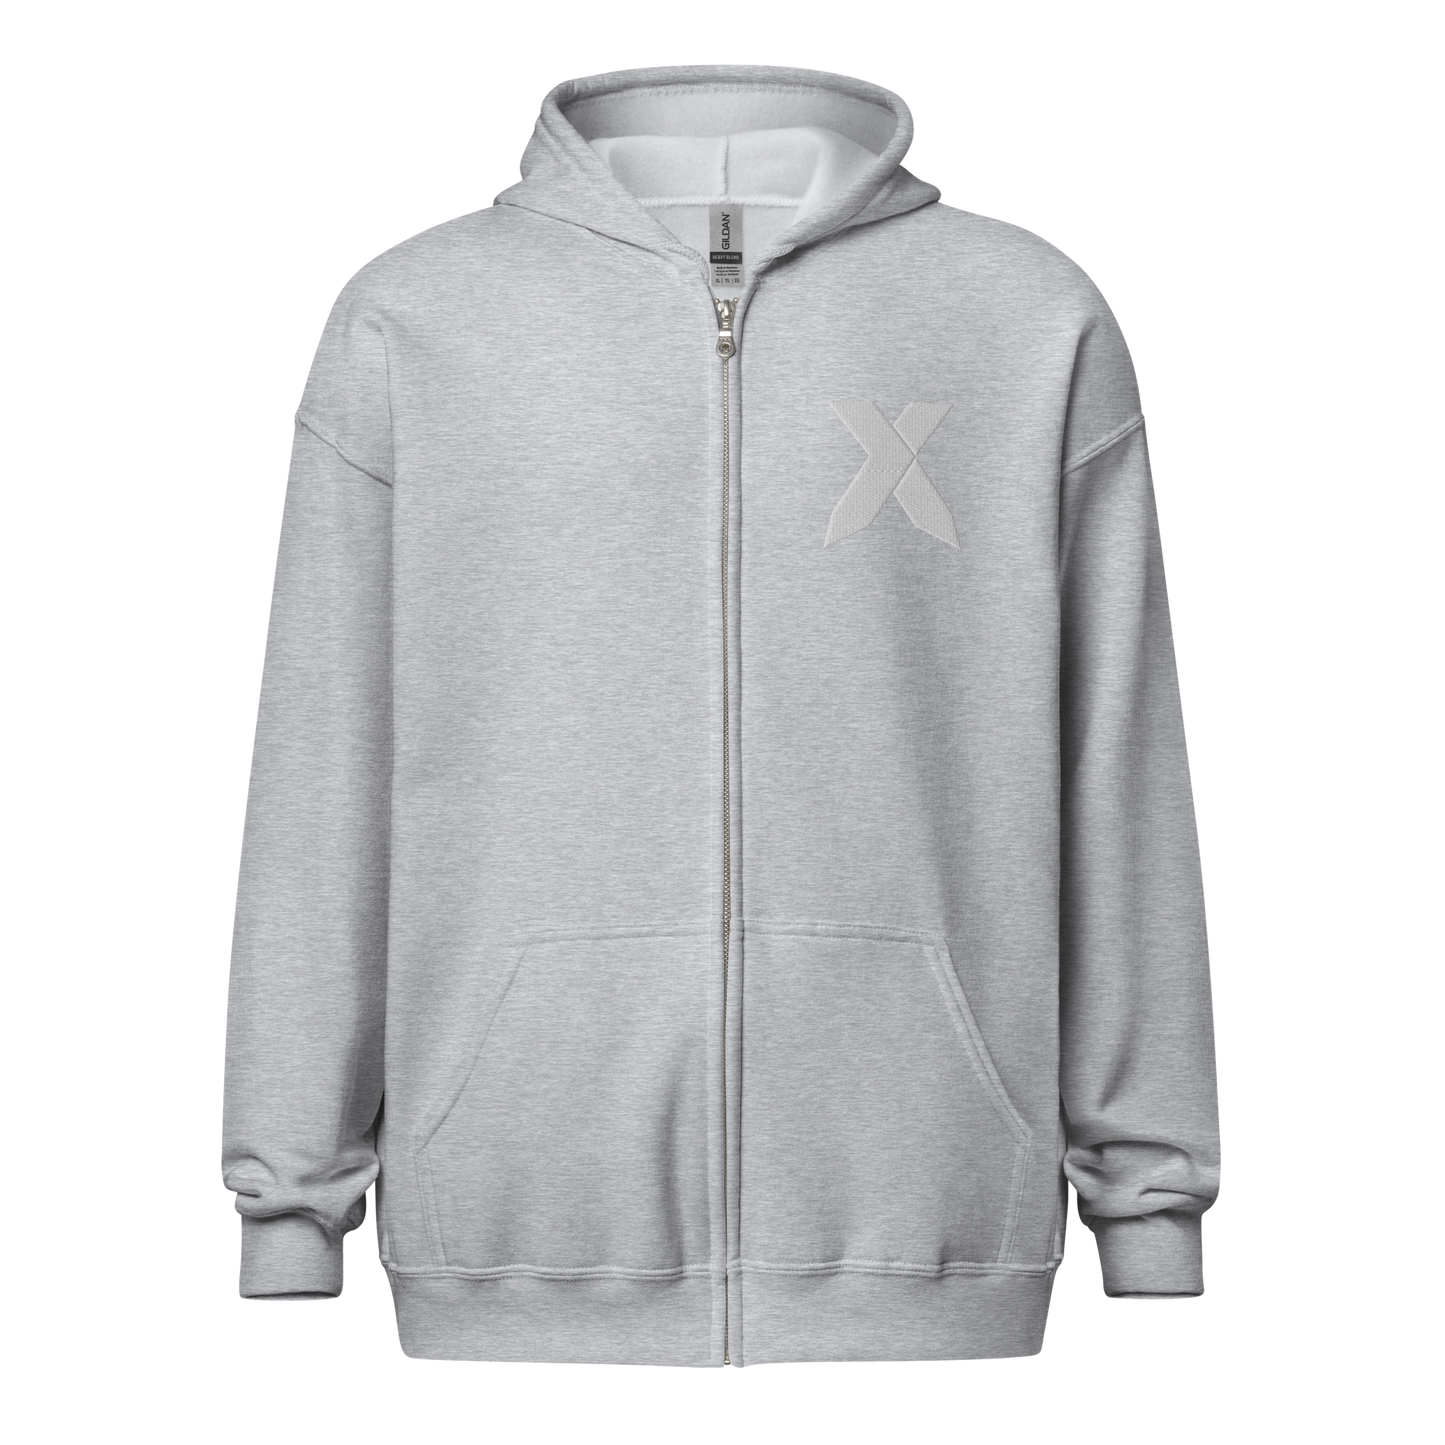 NXS Logo Zip-Up Hoodie (White Stitch)